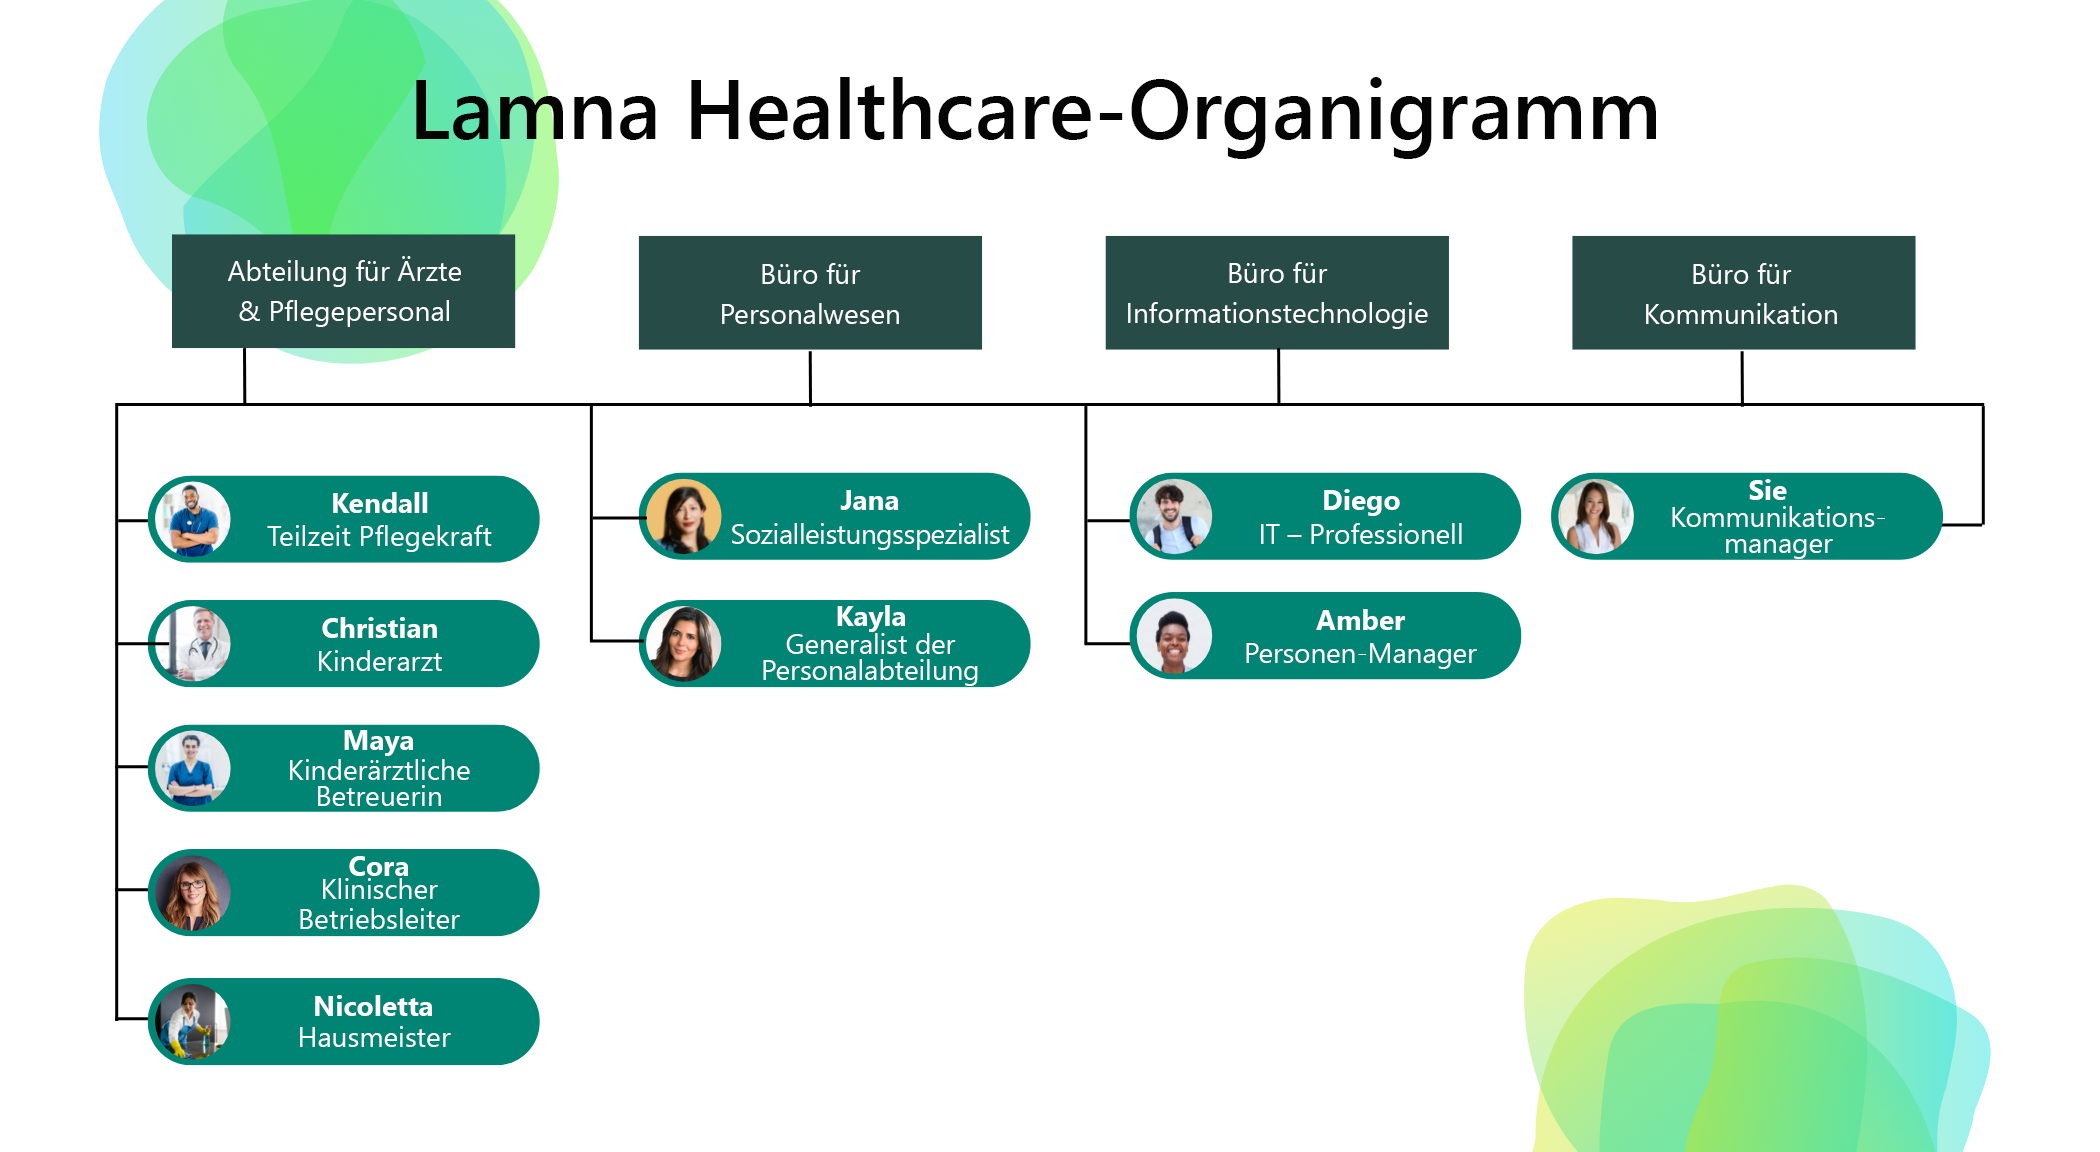 Diagramm eines vereinfachten Lamna Healthcare-Organigramms.